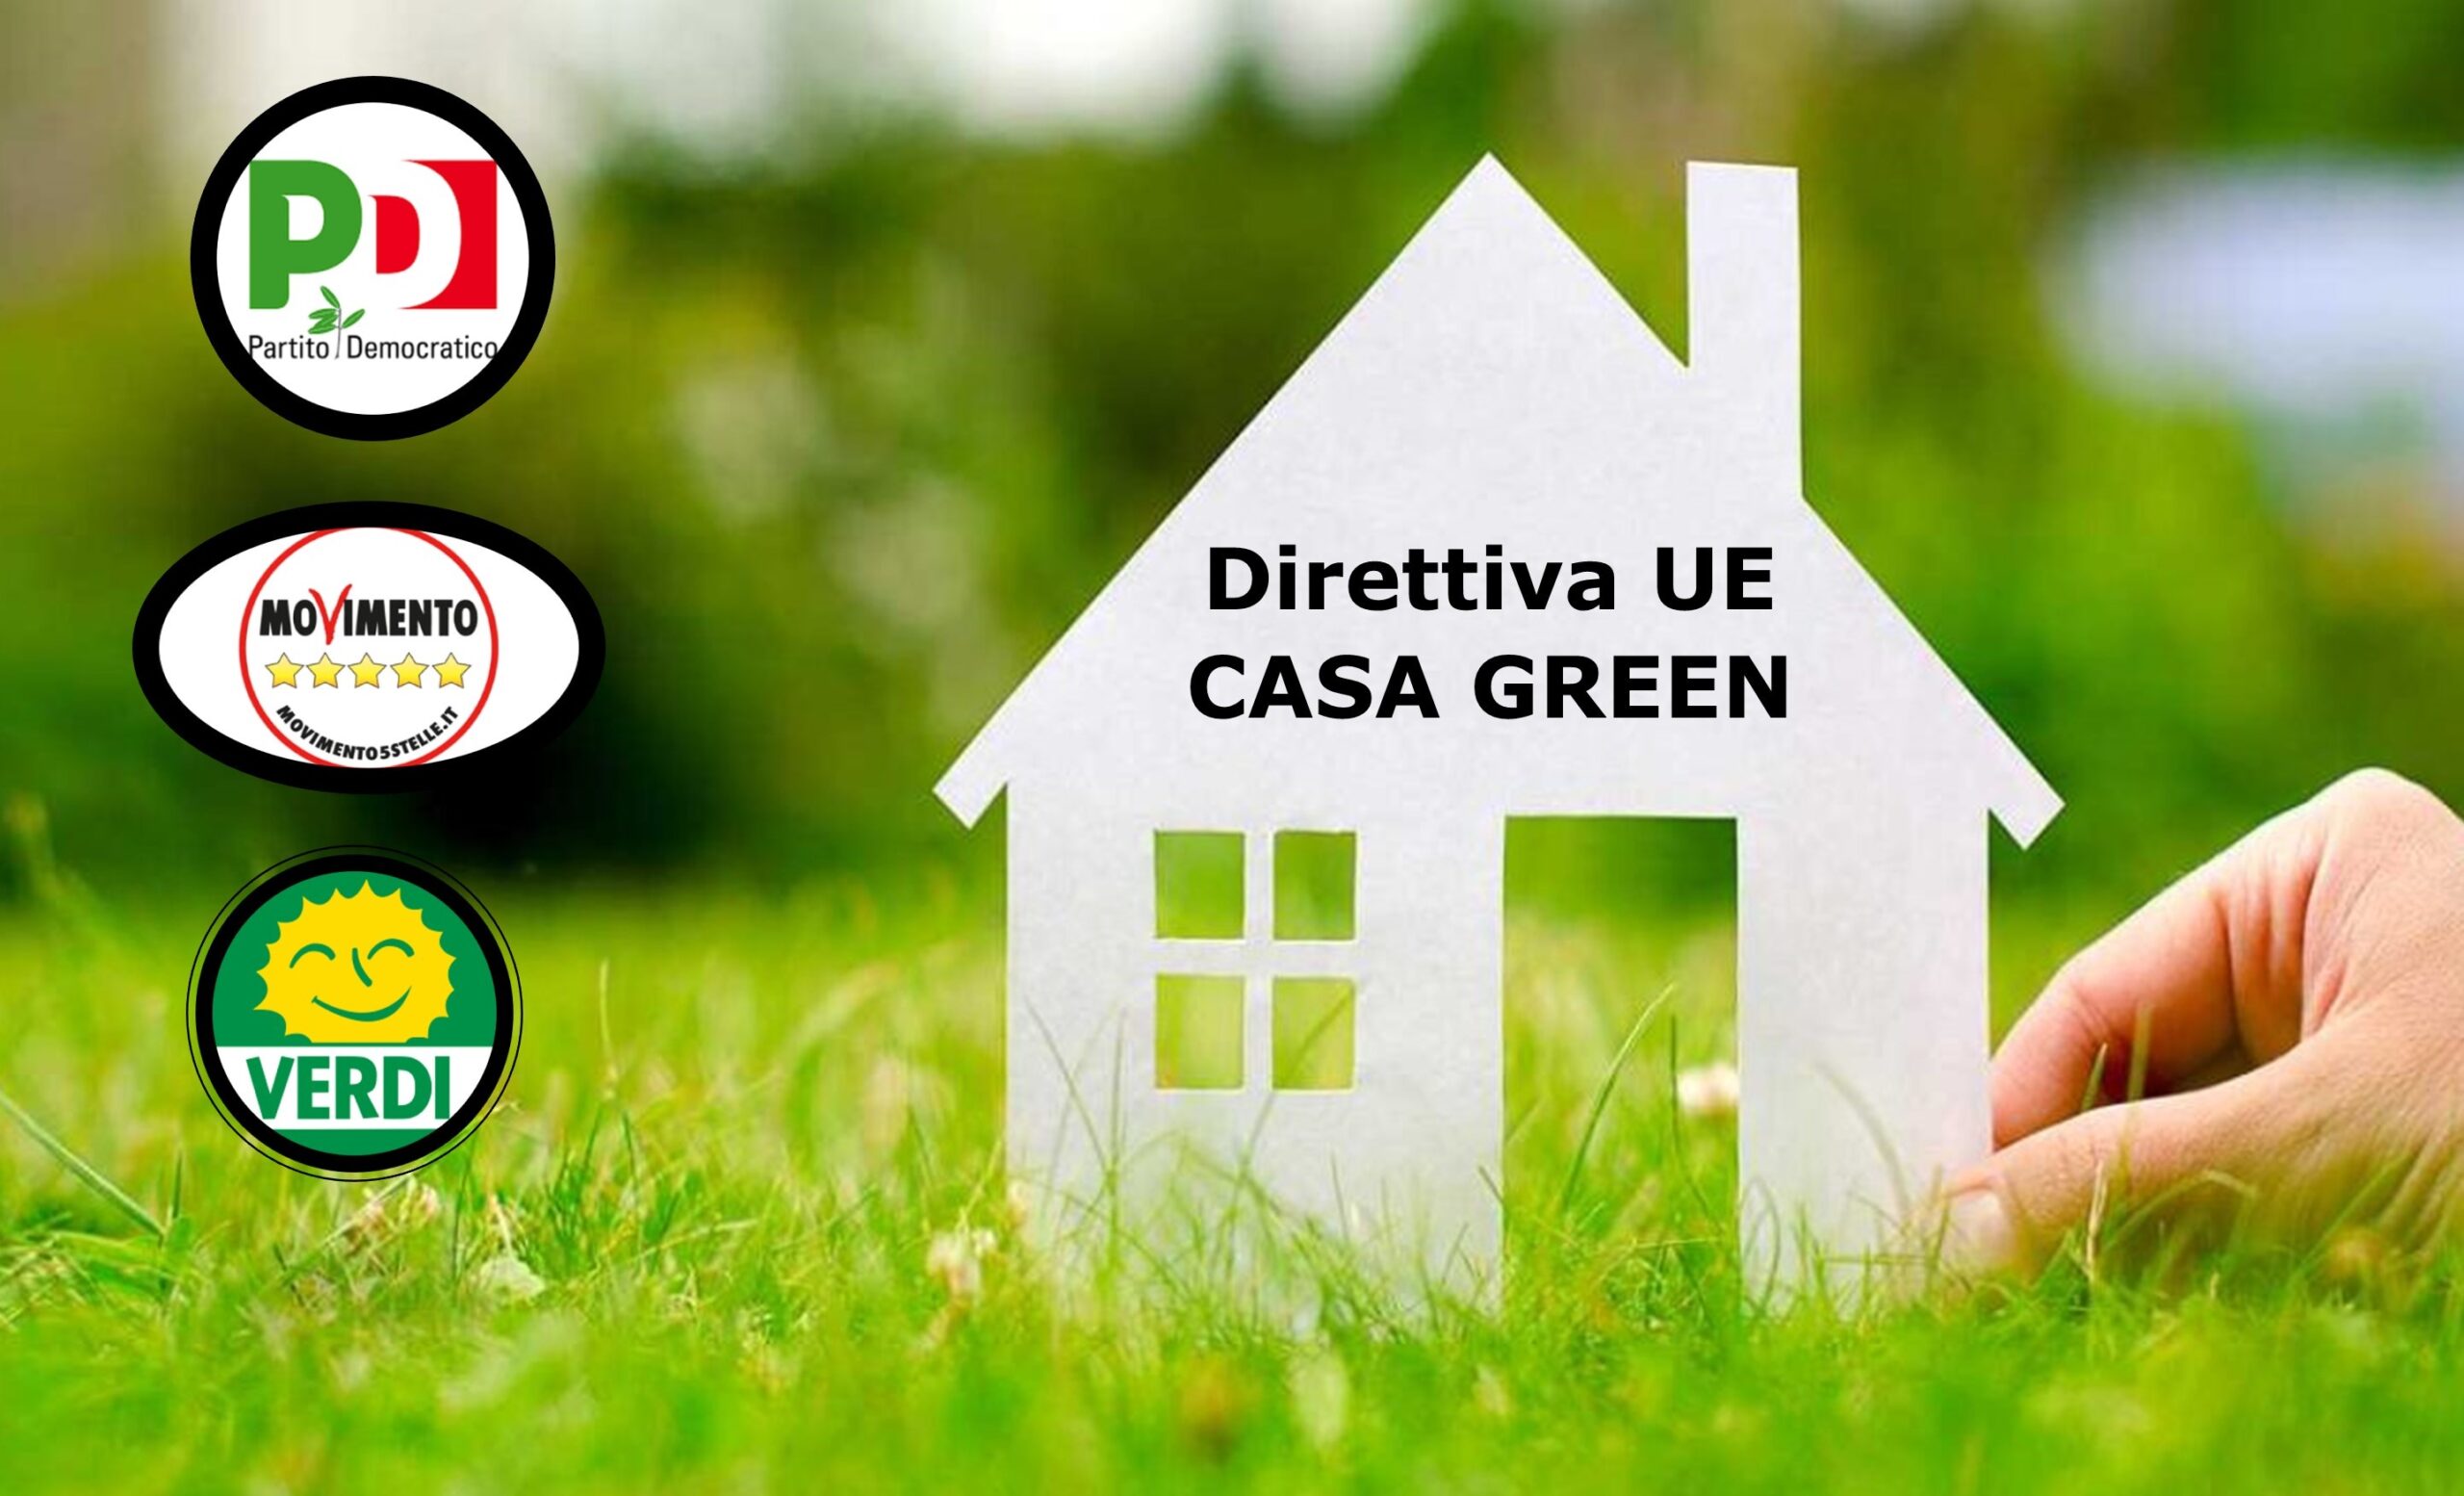 Strasburgo: PD, M5S e Verdi votano a favore della direttiva UE Casa Green